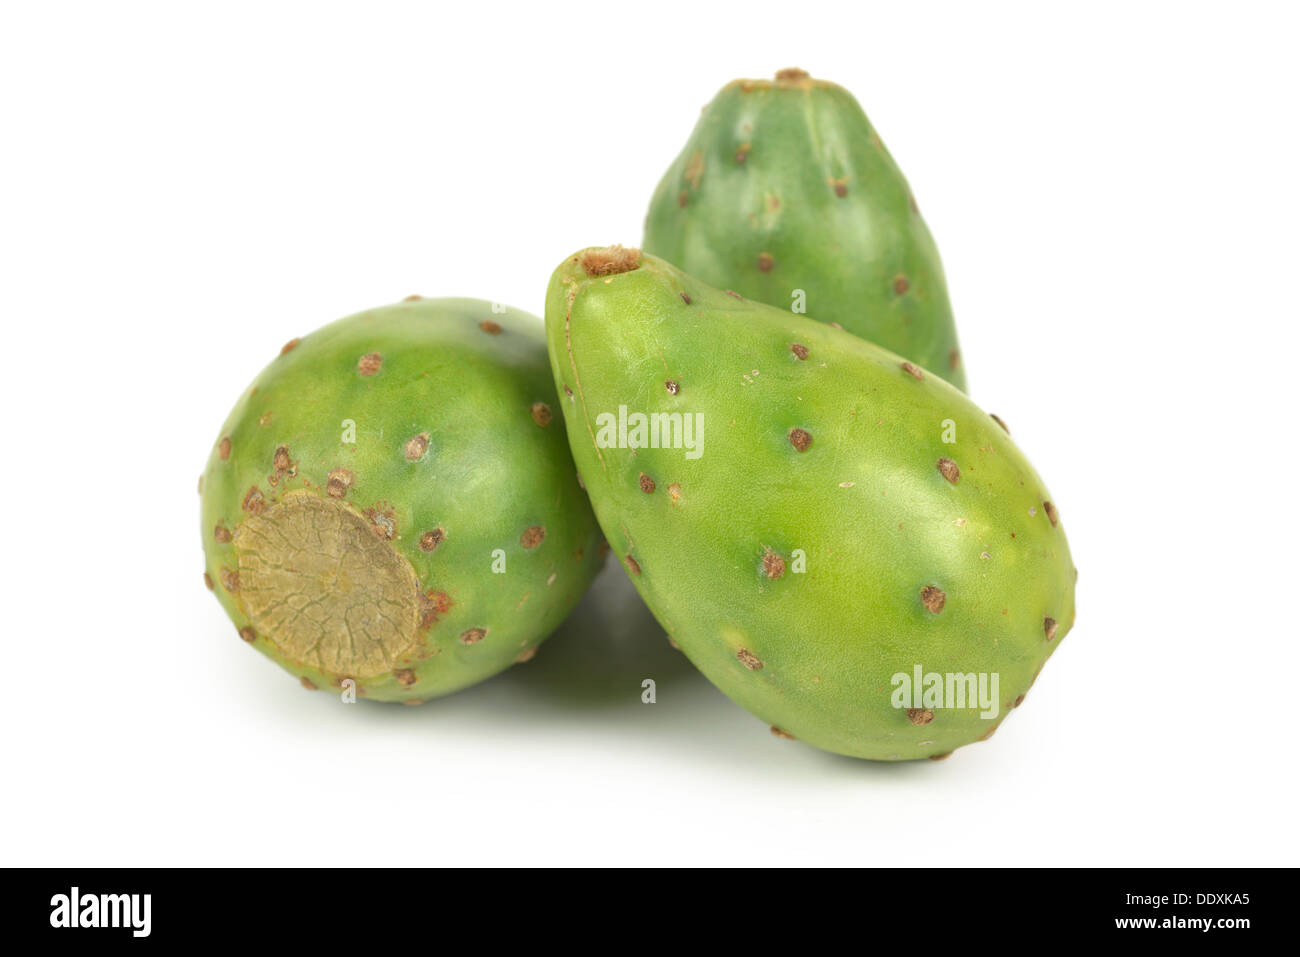 Stachelige Birne, Birnen, Kaktus Frucht Stockfoto